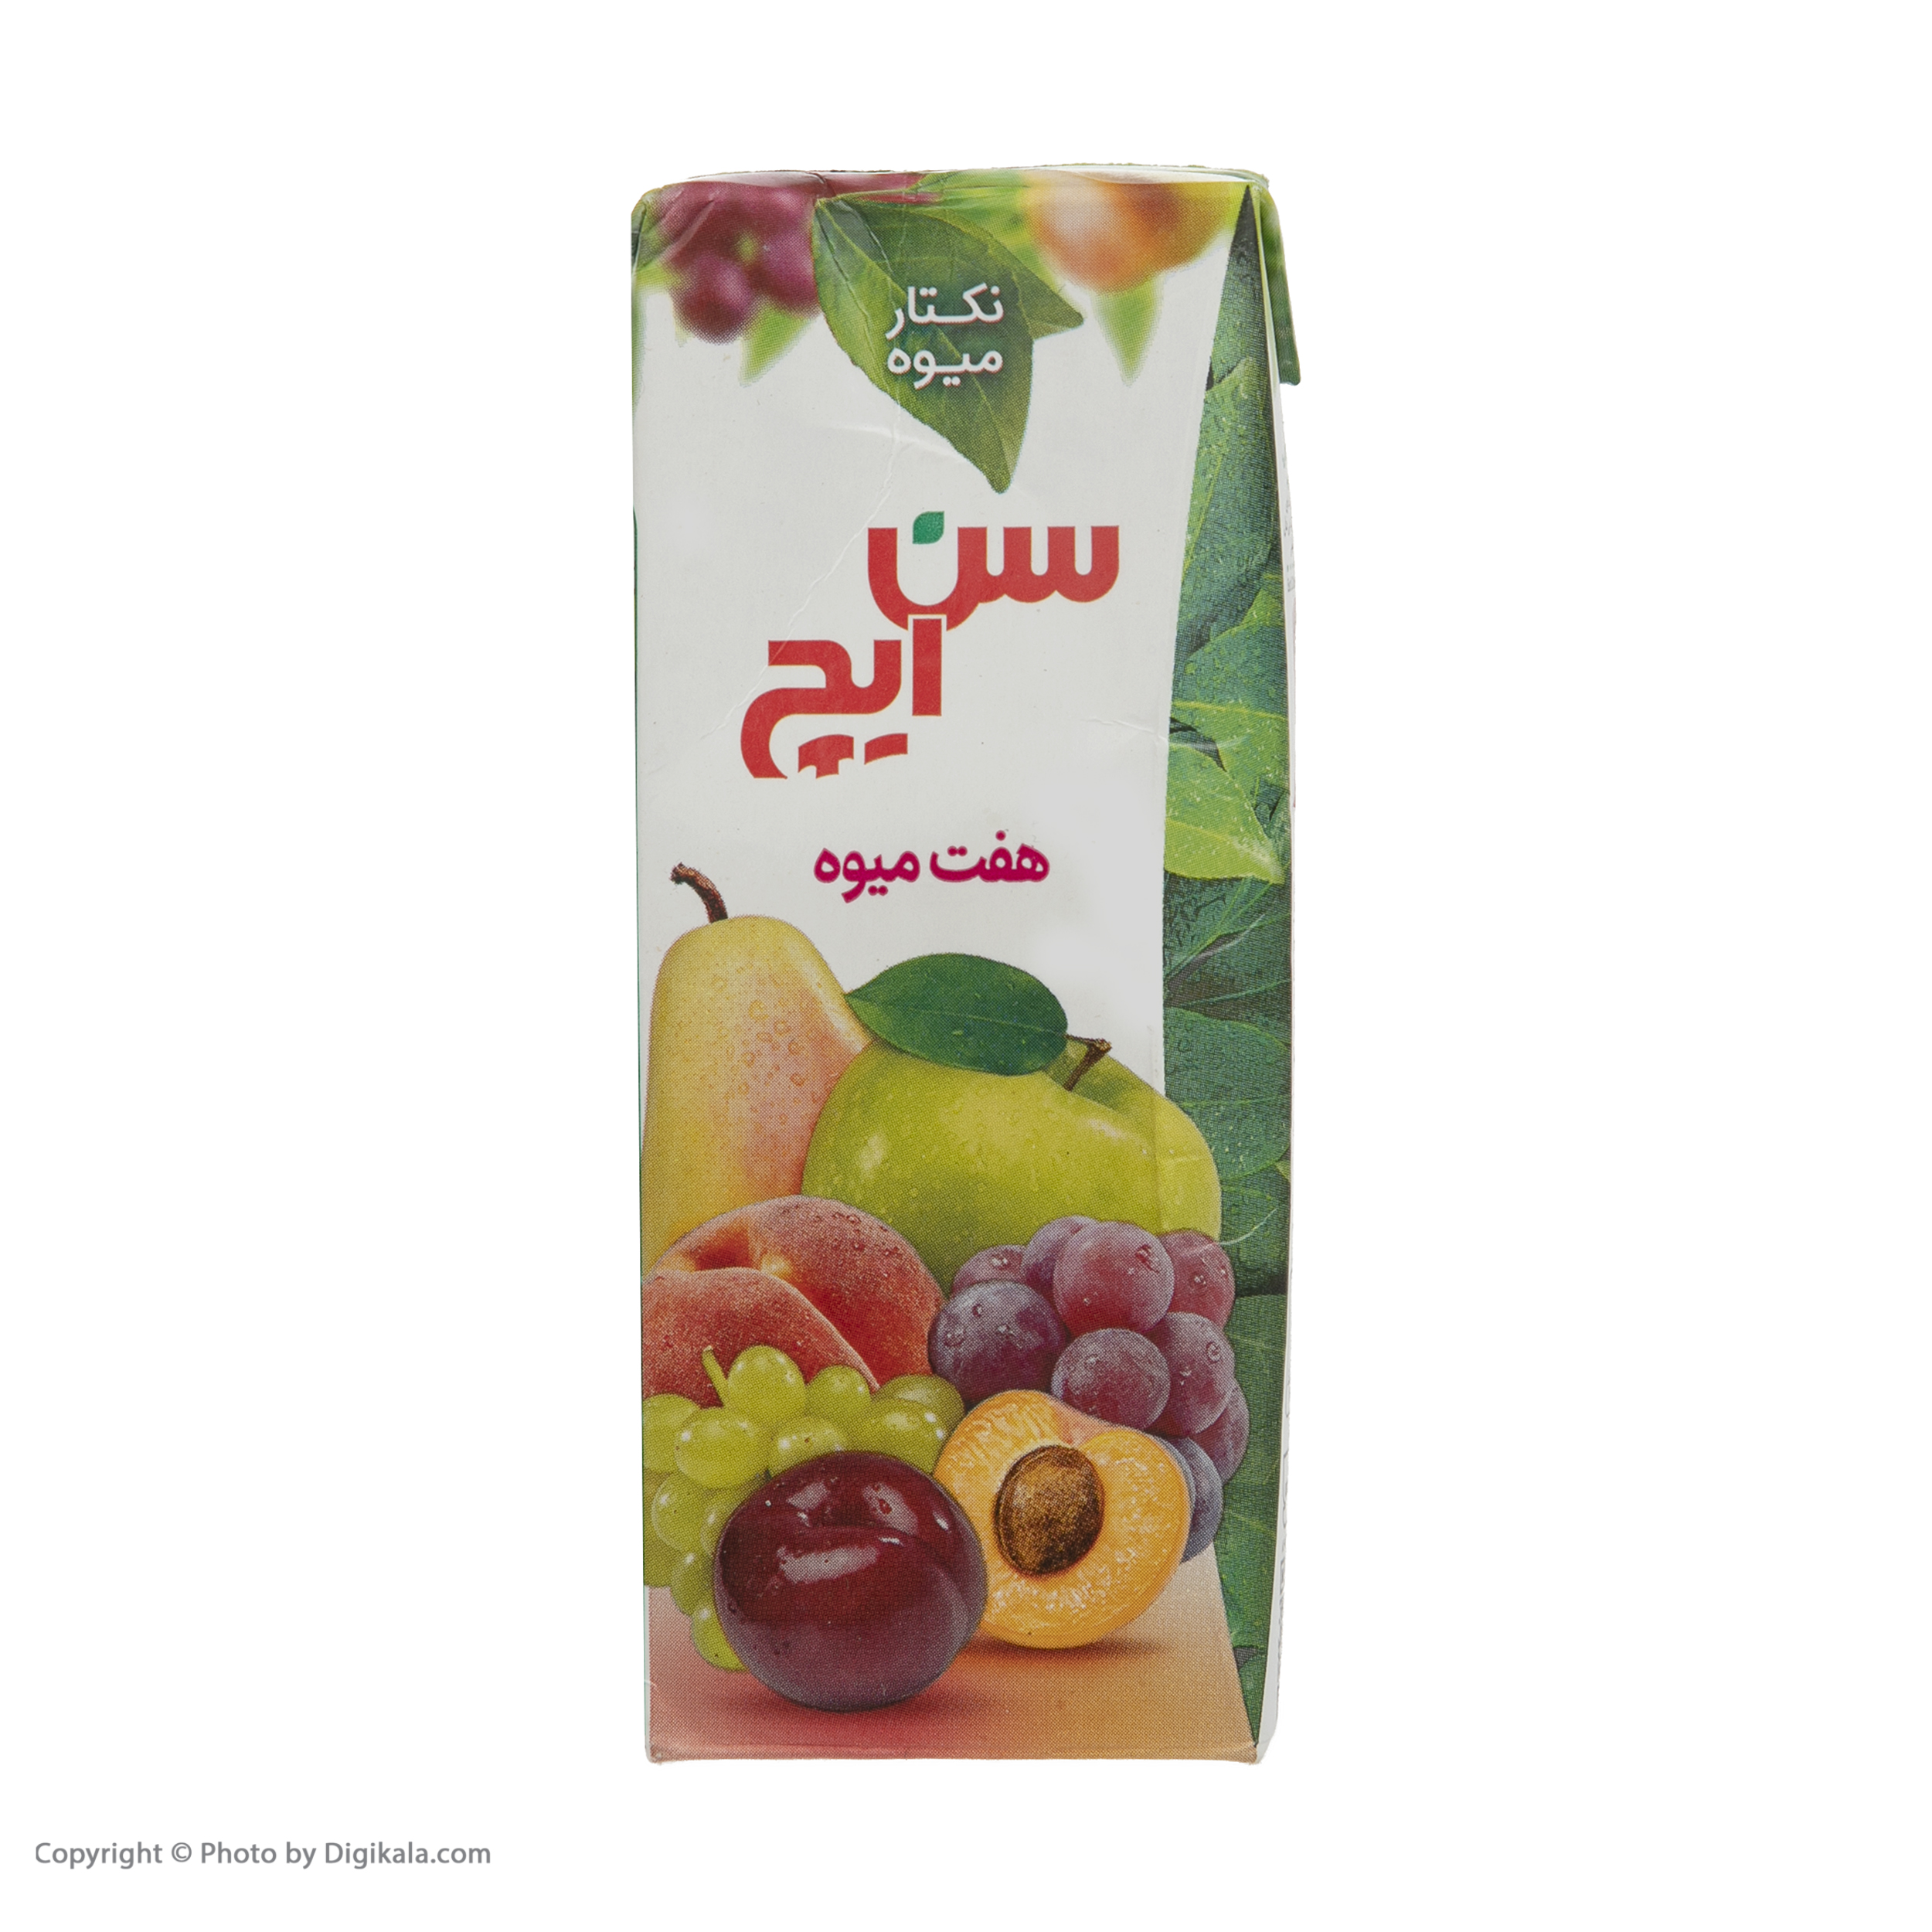 نکتار هفت میوه سن ایچ - 200 میلی لیتر ۳۶ عددیدر ارزانترین فروشگاه اینترنتی ایران ارزان